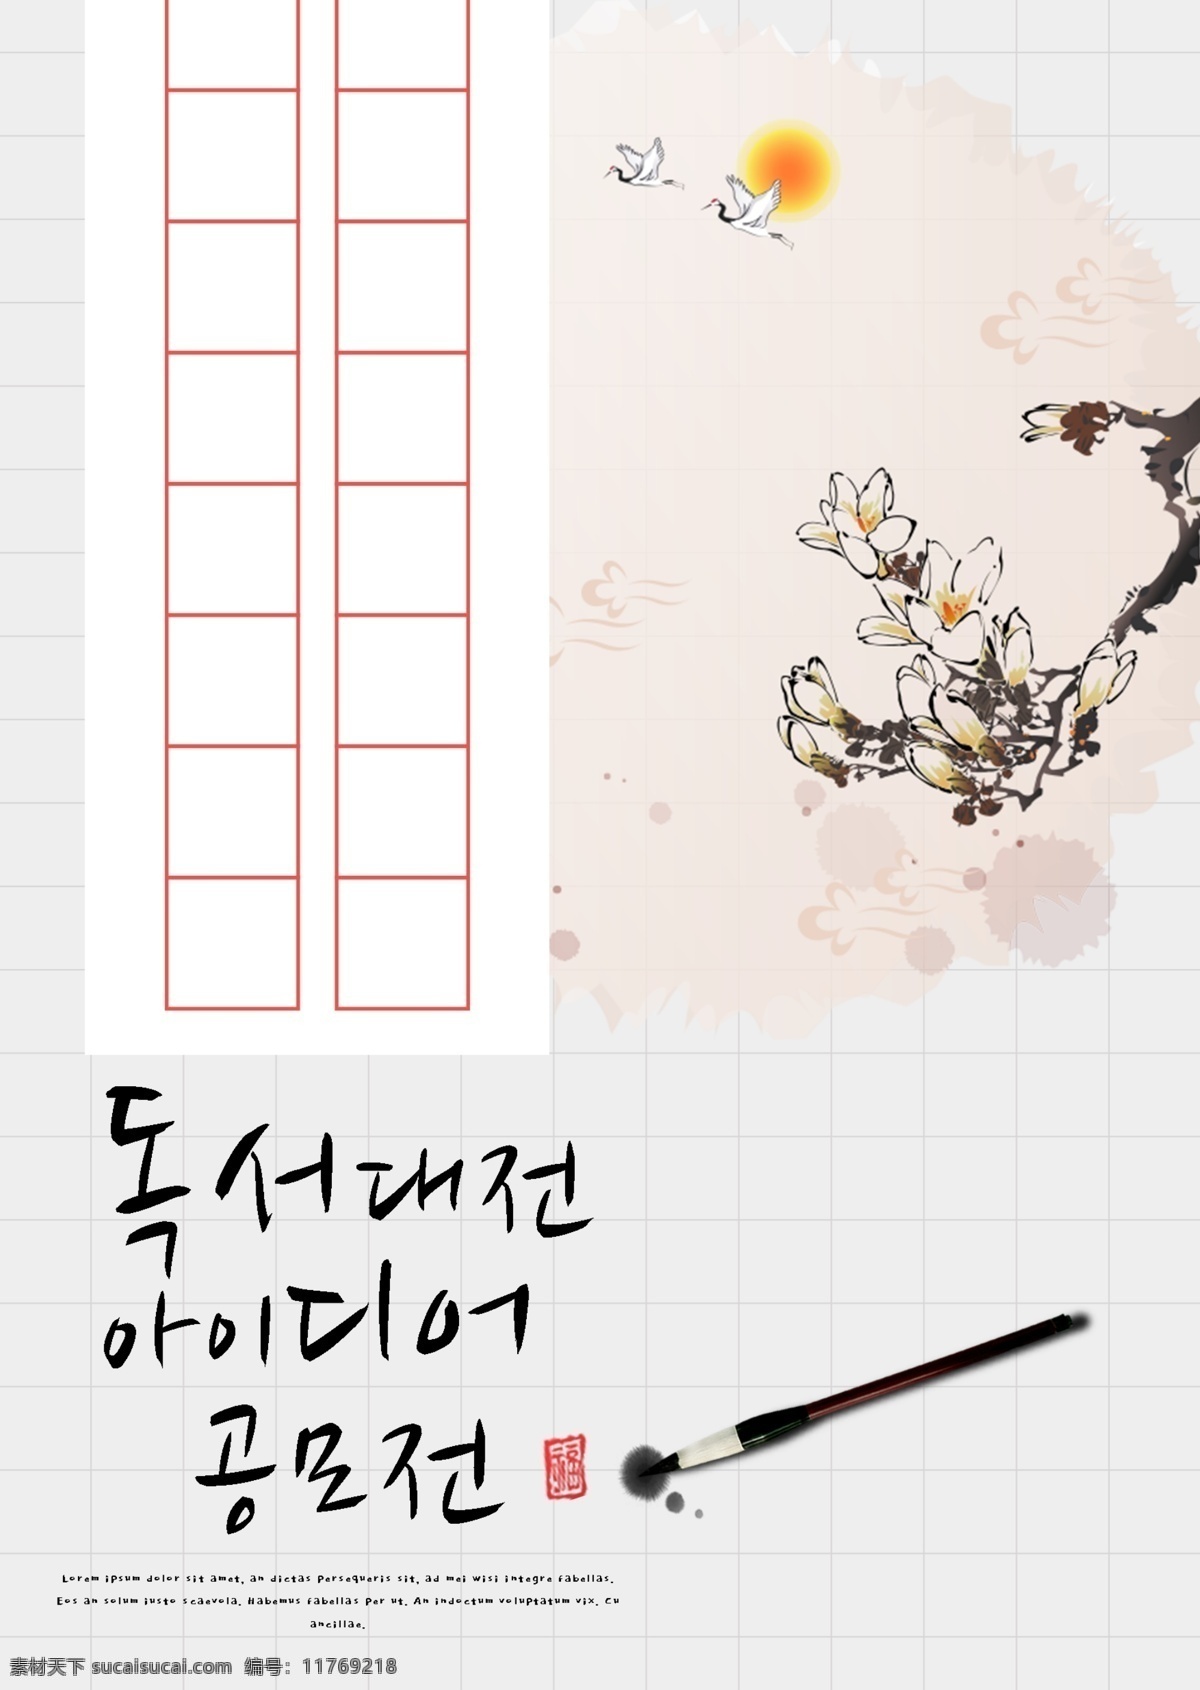 韩国 传统 风格 人物 阅读 比赛 创意 征集 海报 模板 世界 上 很多 人 极简主义 格 手写 这个单词 书 写 手稿 人物格子 毛笔 樱花 丹顶鹤 水墨 写作 文化